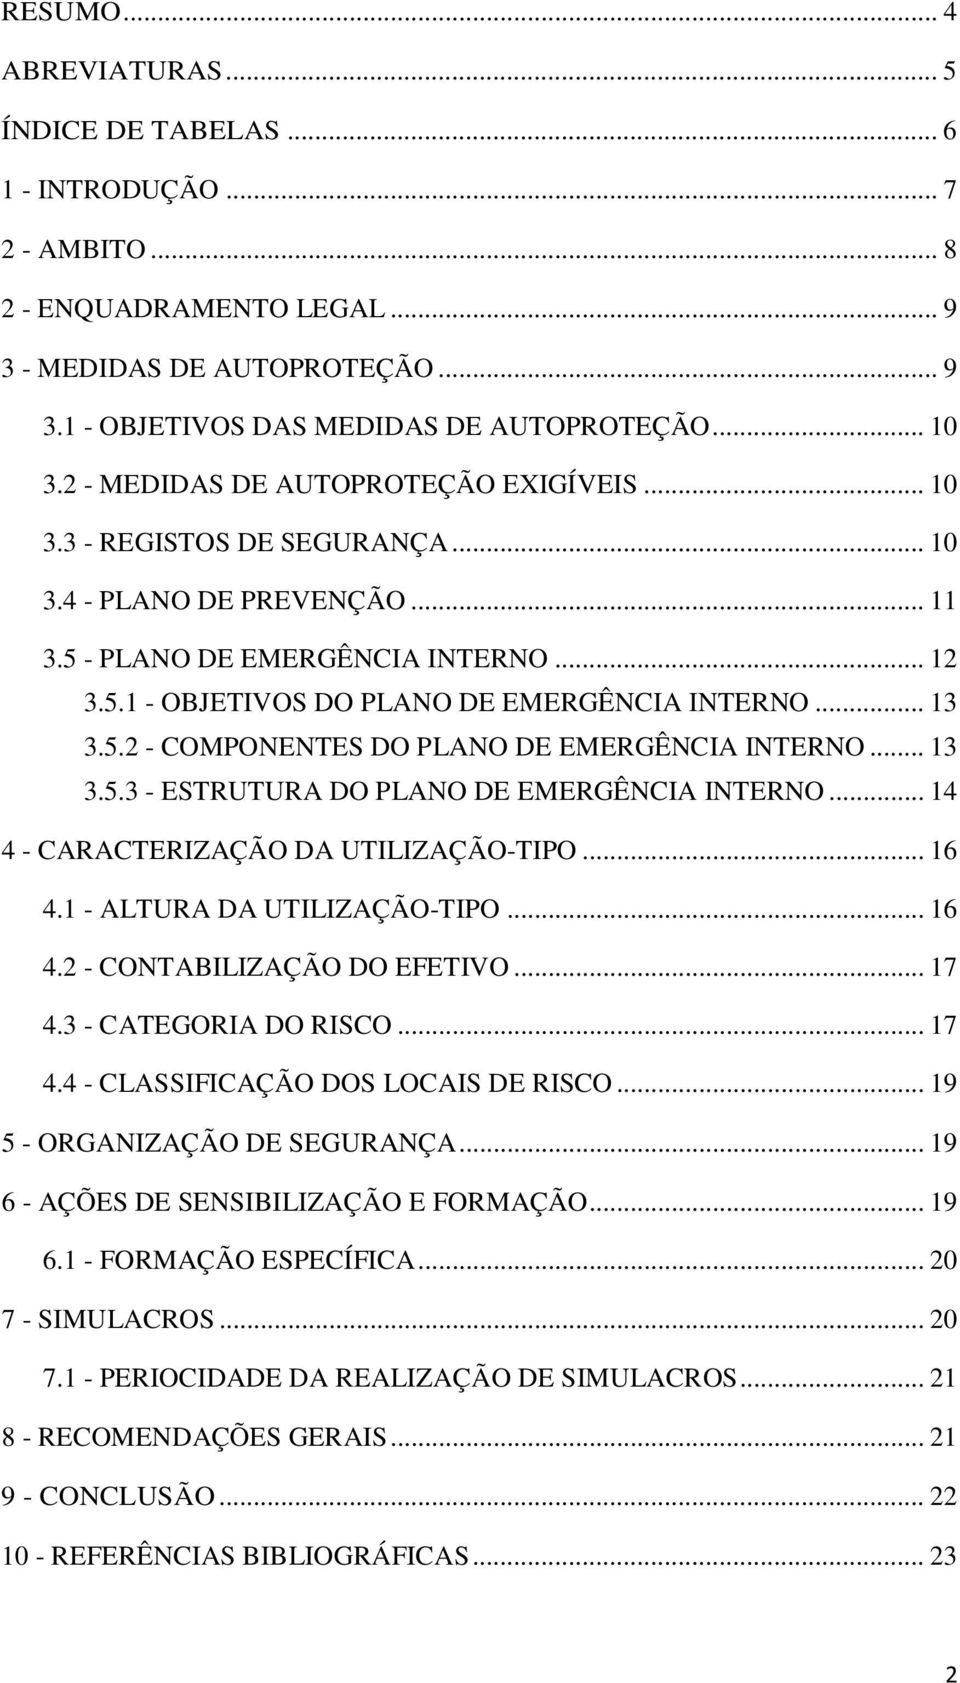 .. 13 3.5.2 - COMPONENTES DO PLANO DE EMERGÊNCIA INTERNO... 13 3.5.3 - ESTRUTURA DO PLANO DE EMERGÊNCIA INTERNO... 14 4 - CARACTERIZAÇÃO DA UTILIZAÇÃO-TIPO... 16 4.1 - ALTURA DA UTILIZAÇÃO-TIPO... 16 4.2 - CONTABILIZAÇÃO DO EFETIVO.